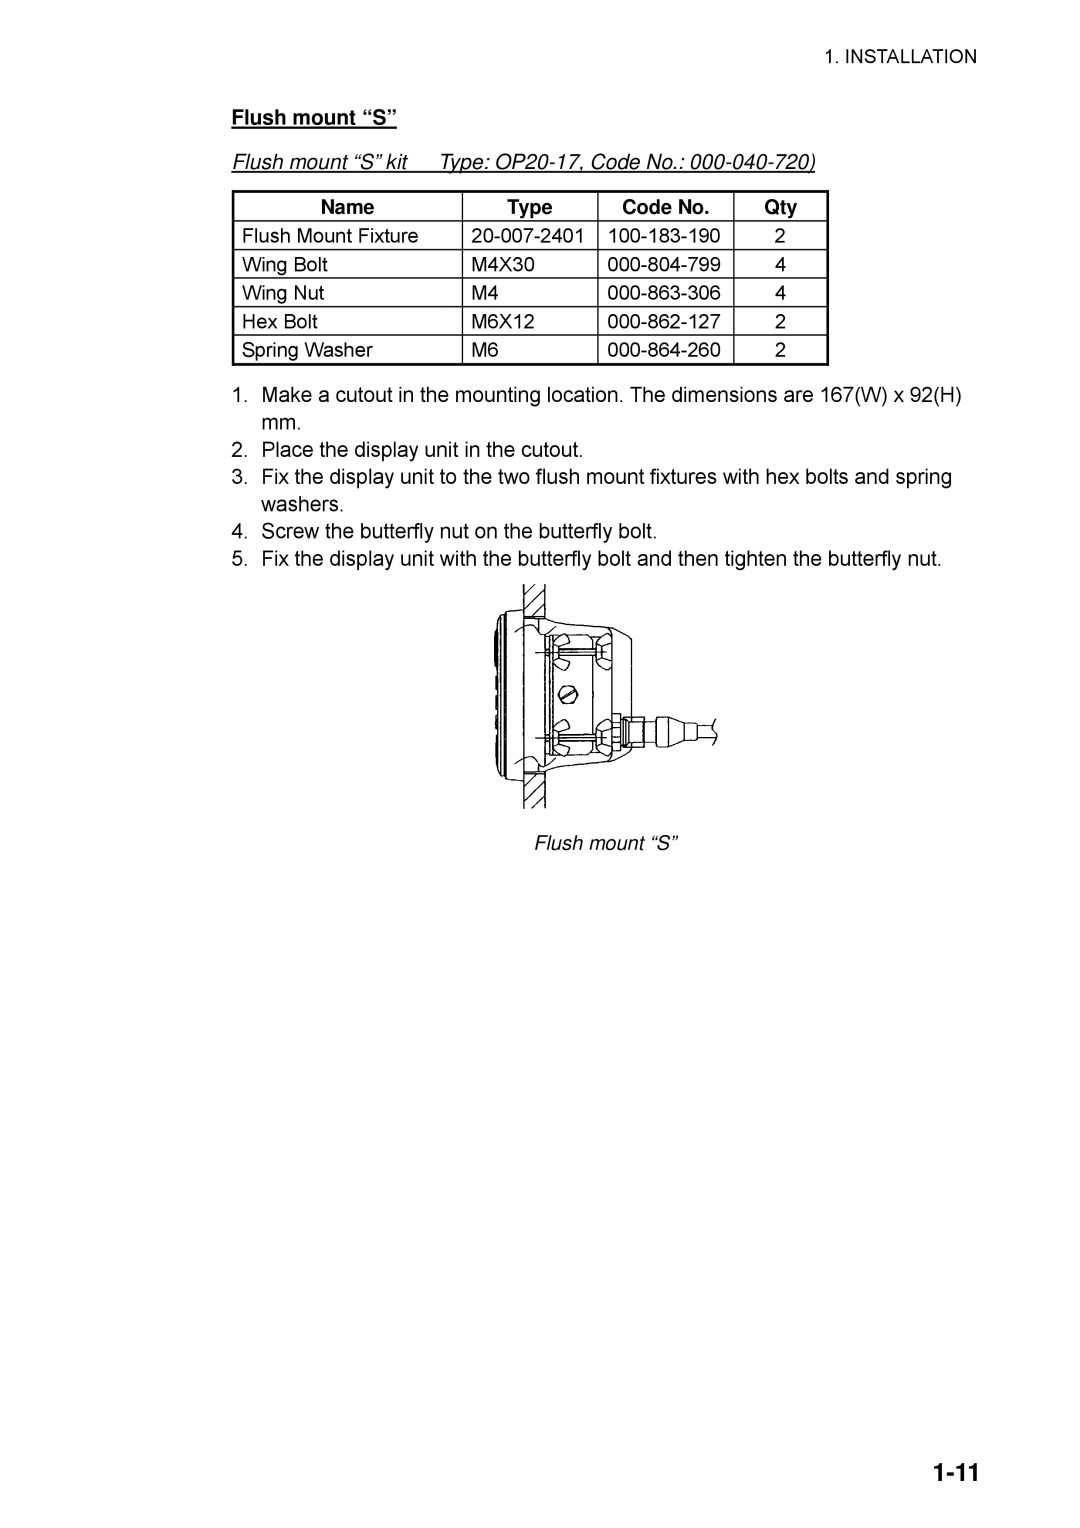 Furuno SC-110 manual 1-11, Flush mount “S” kit, Type OP20-17,Code No, Name 